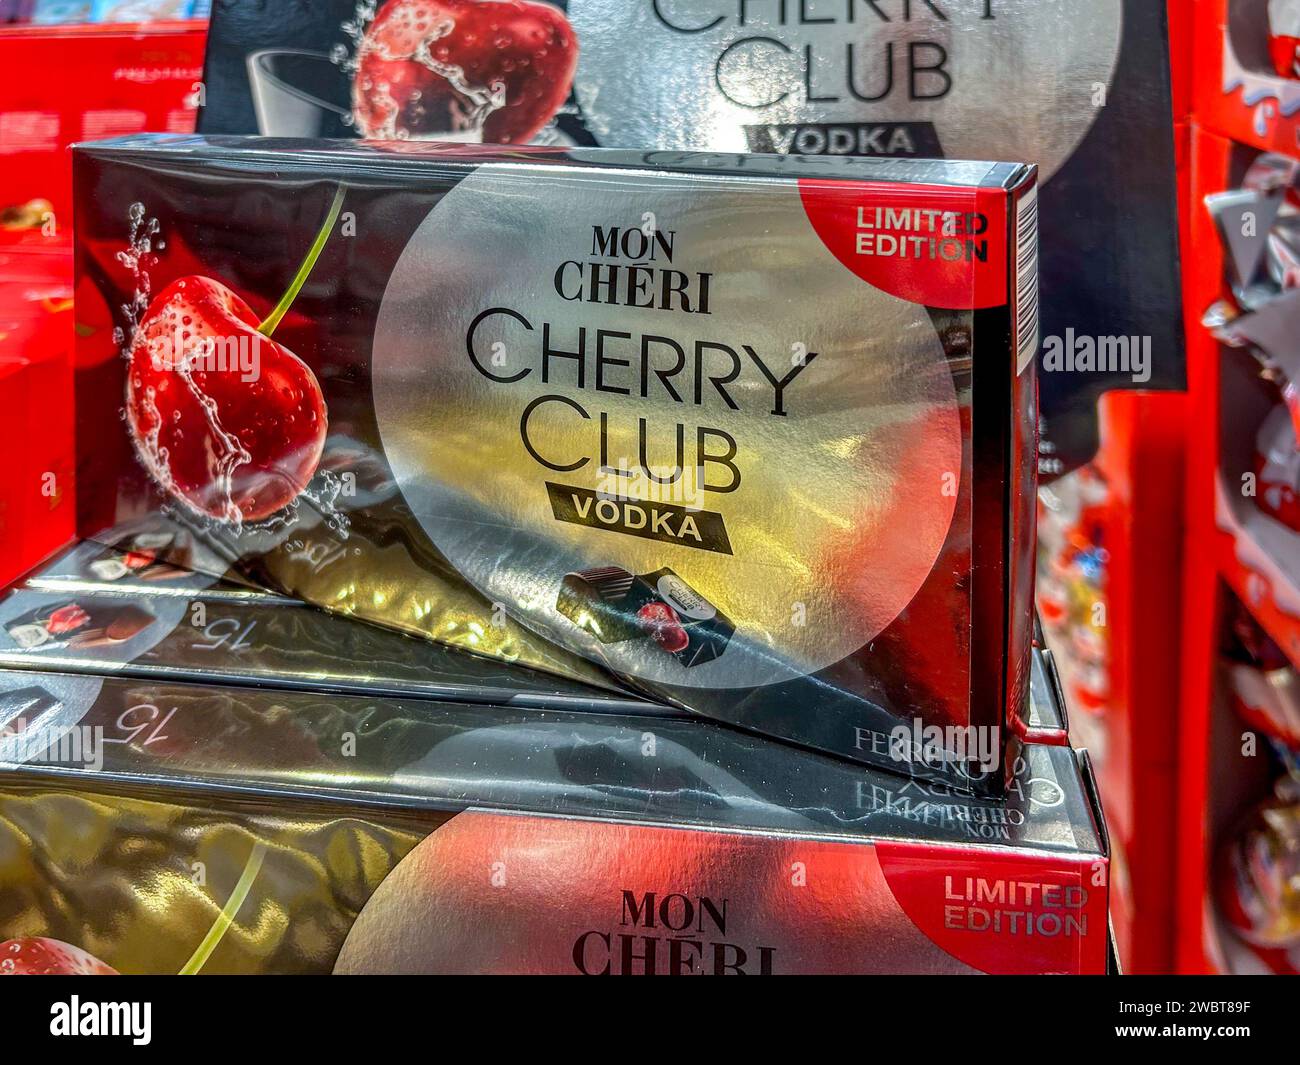 Ferrero Mon Cheri Vodka Cherry Club édition limitée 15 chocolat cadeau de  Noël